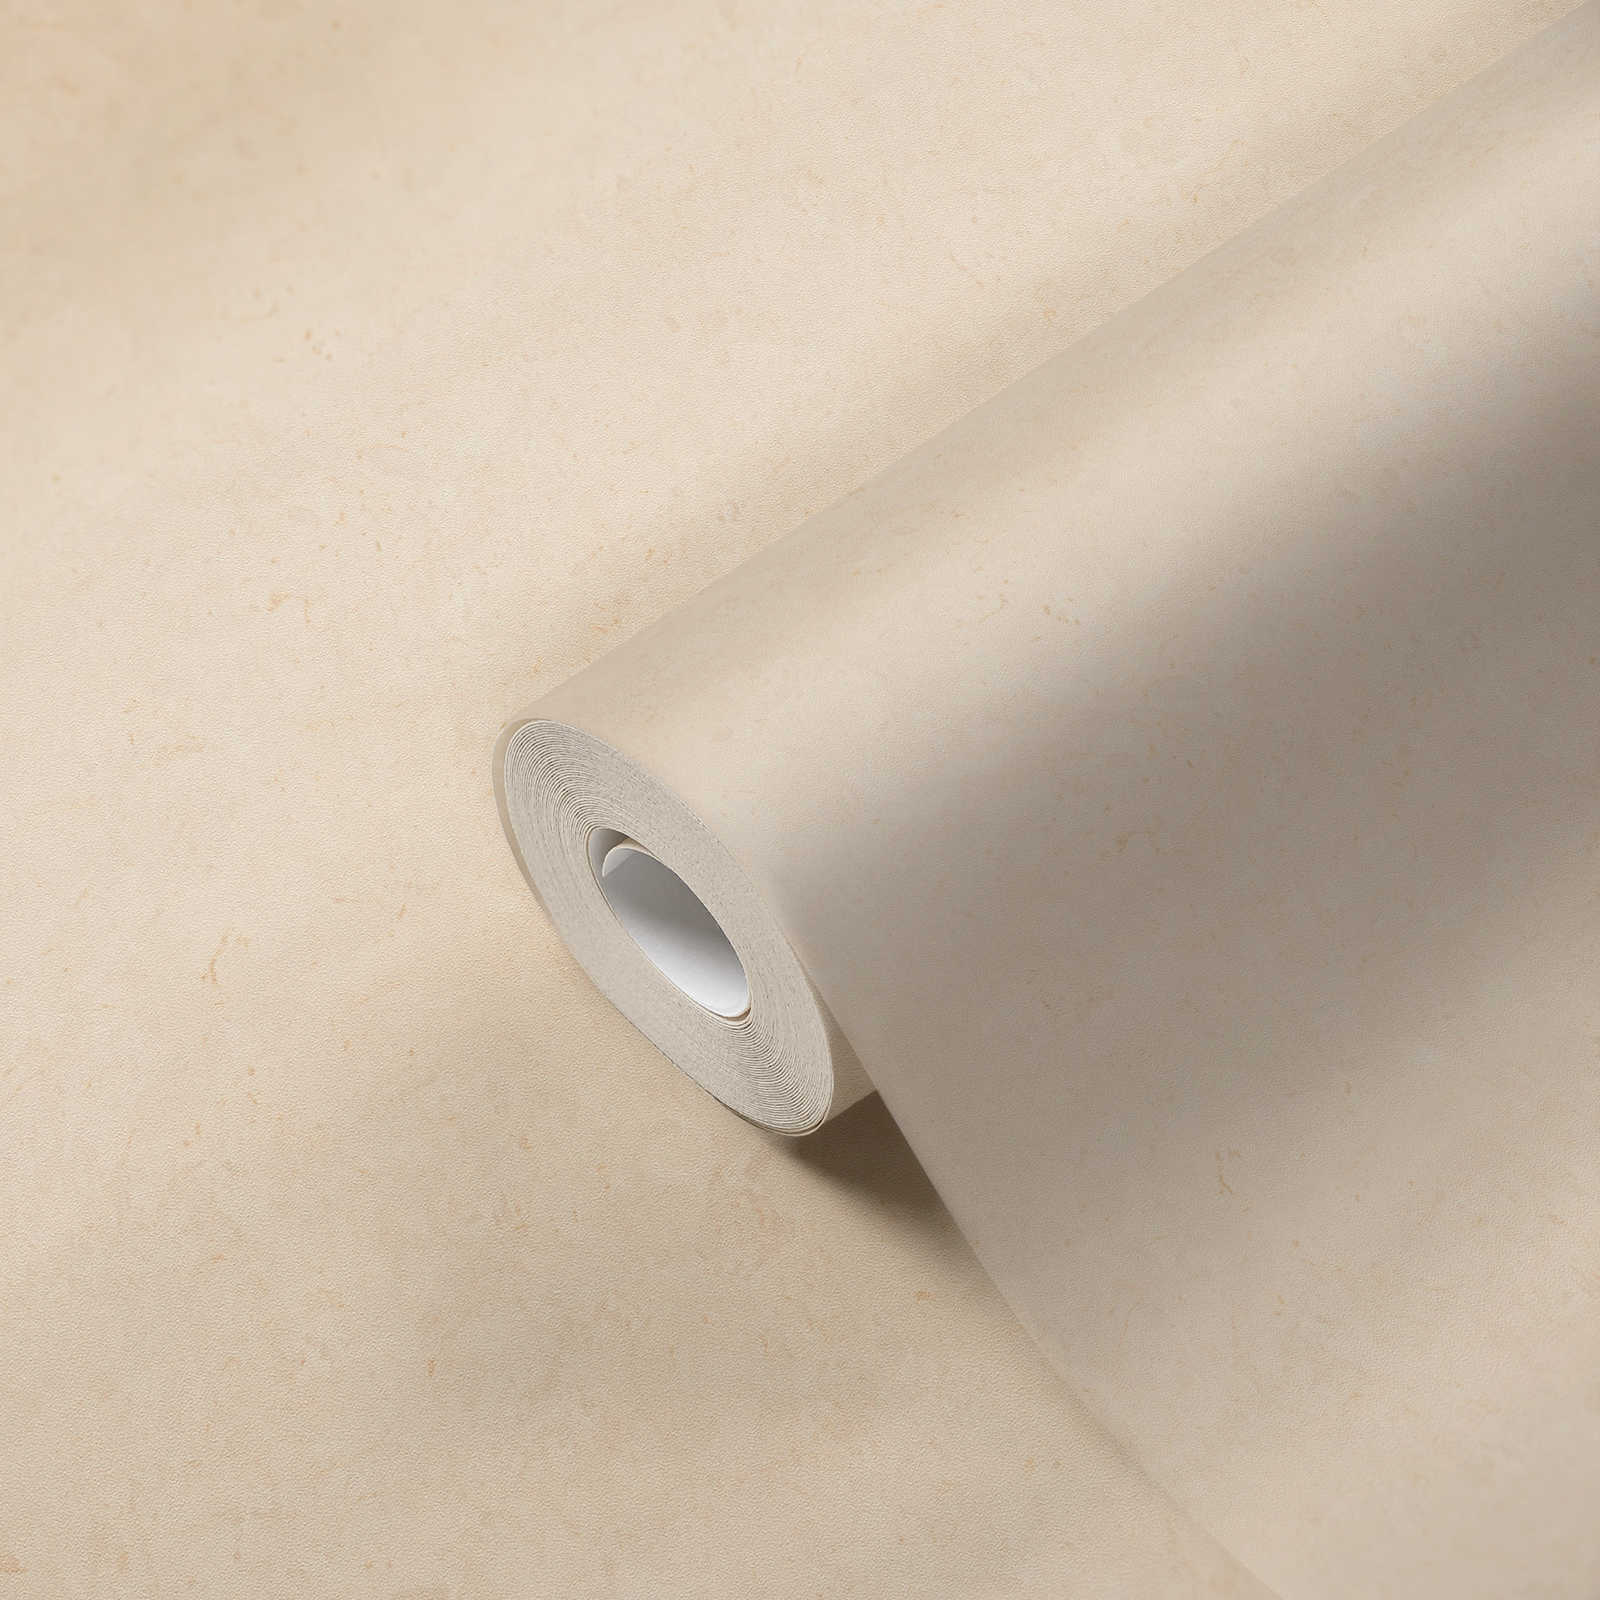             Plain wallpaper with subtle concrete look - beige, cream
        